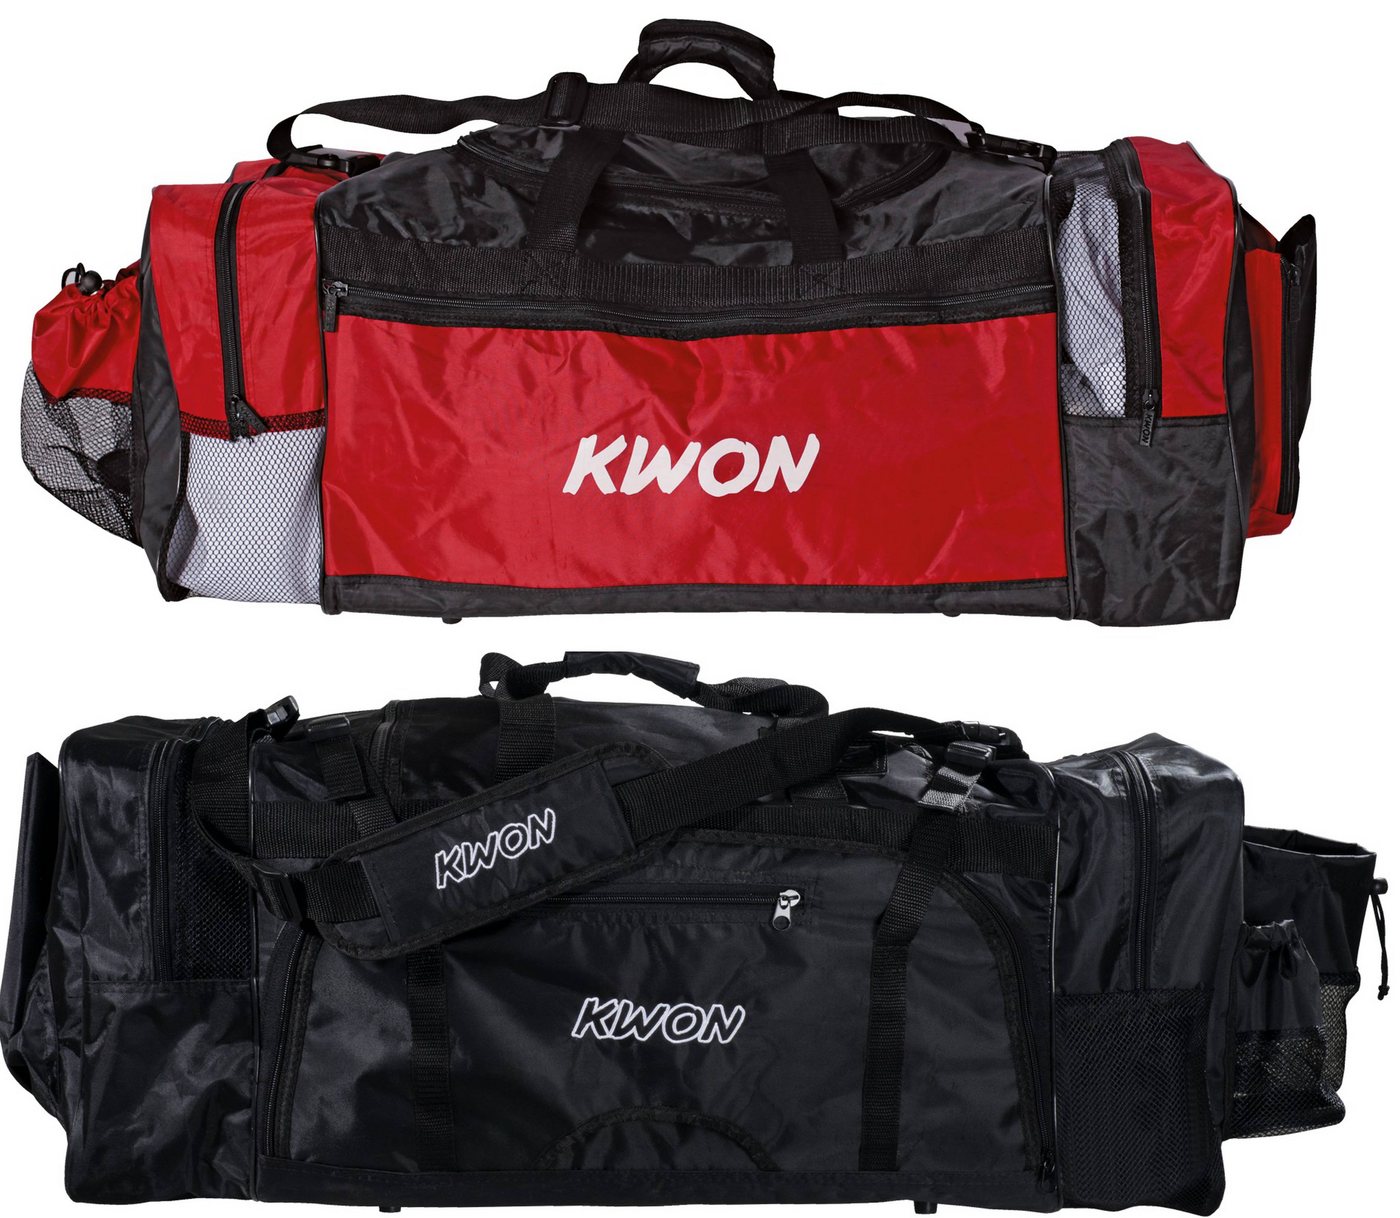 KWON Sporttasche Evolution schwarz rot 70 cm Taekwondo TKD Trainingstasche (Lieblingstasche, 2 Farben), Sehr viele praktische Fächer, geräumig, Nassfach von KWON